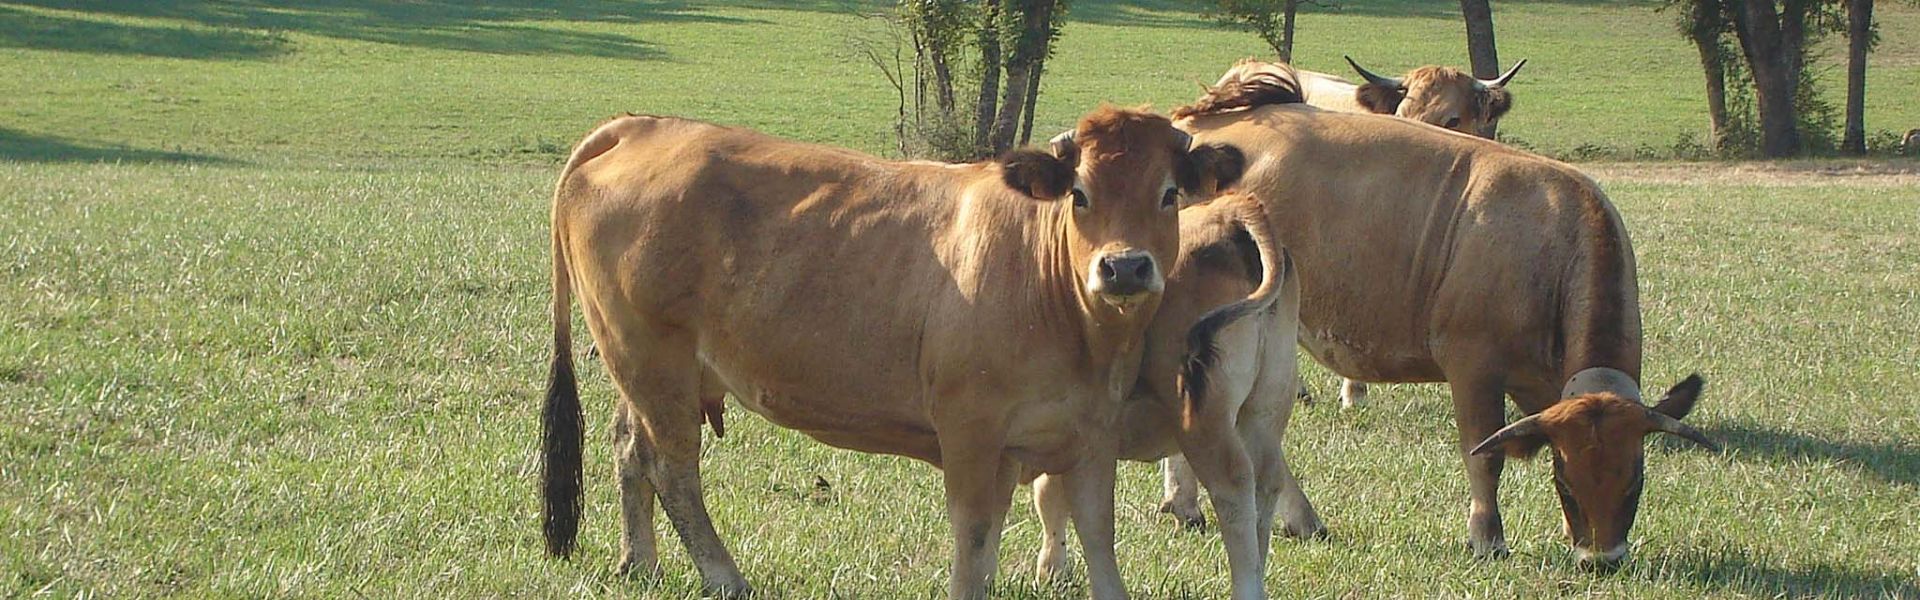 Des vaches dans un pré